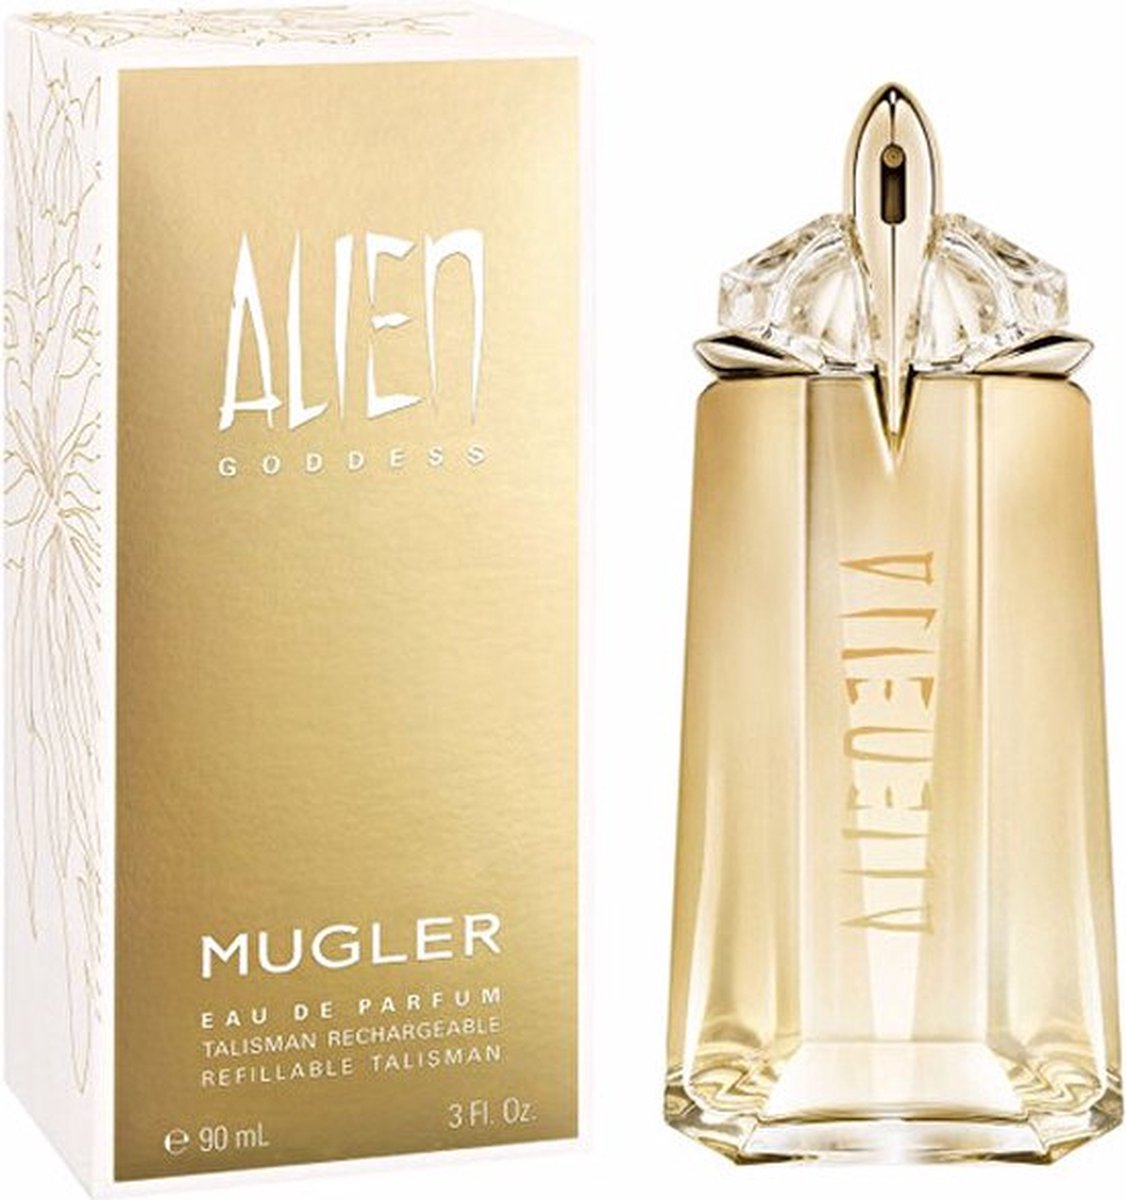 Thierry Mugler Alien Goddess 30 ml Eau de Parfum - Damesparfum